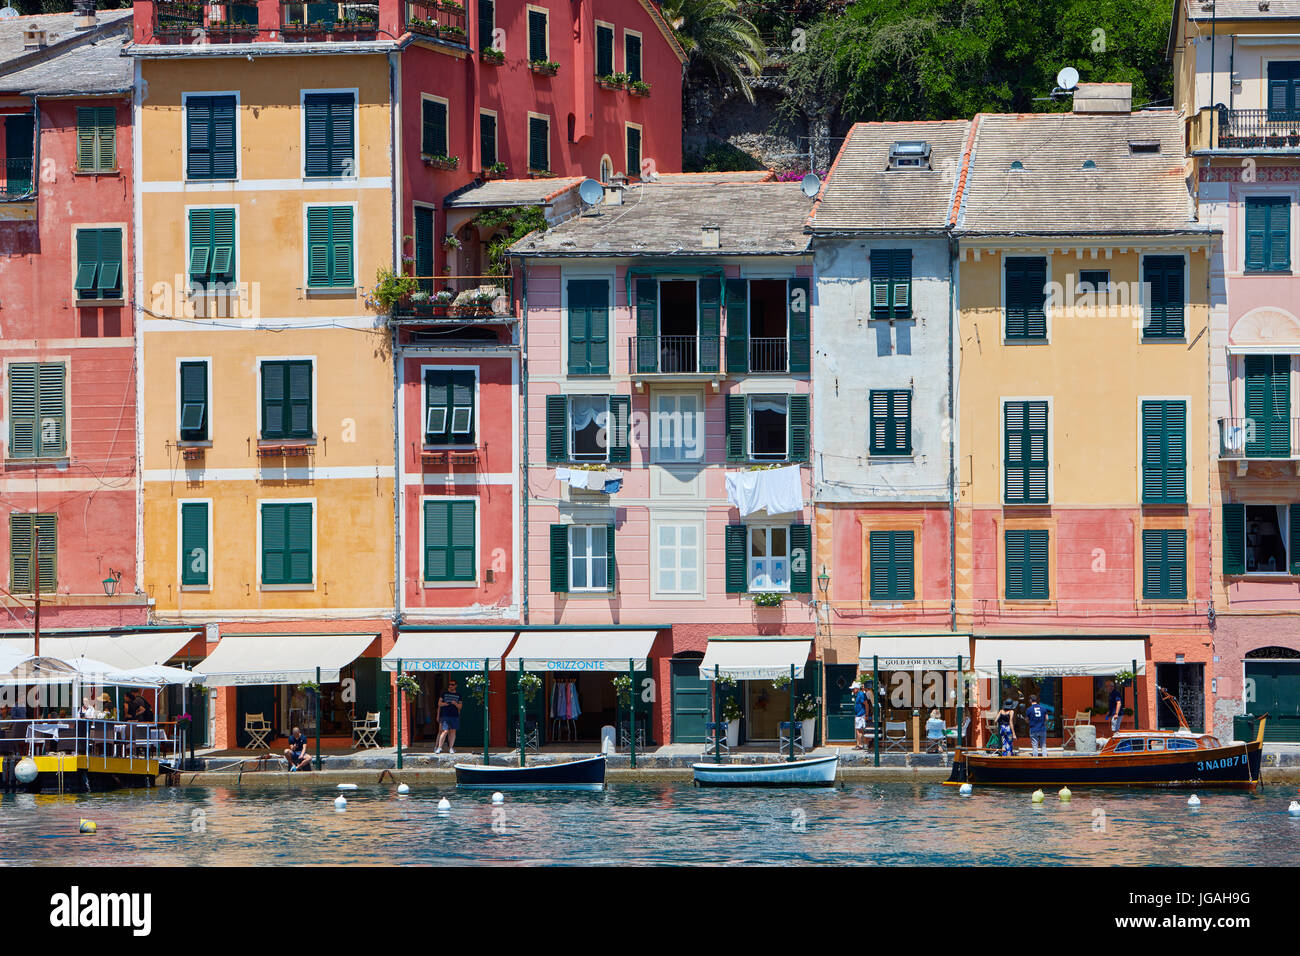 PORTOFINO, Italia - 10 Giugno: Portofino italiano tipico villaggio con case colorate facciate su Giugno 10, 2017 a Portofino, Italia. La città è uno dei th Foto Stock